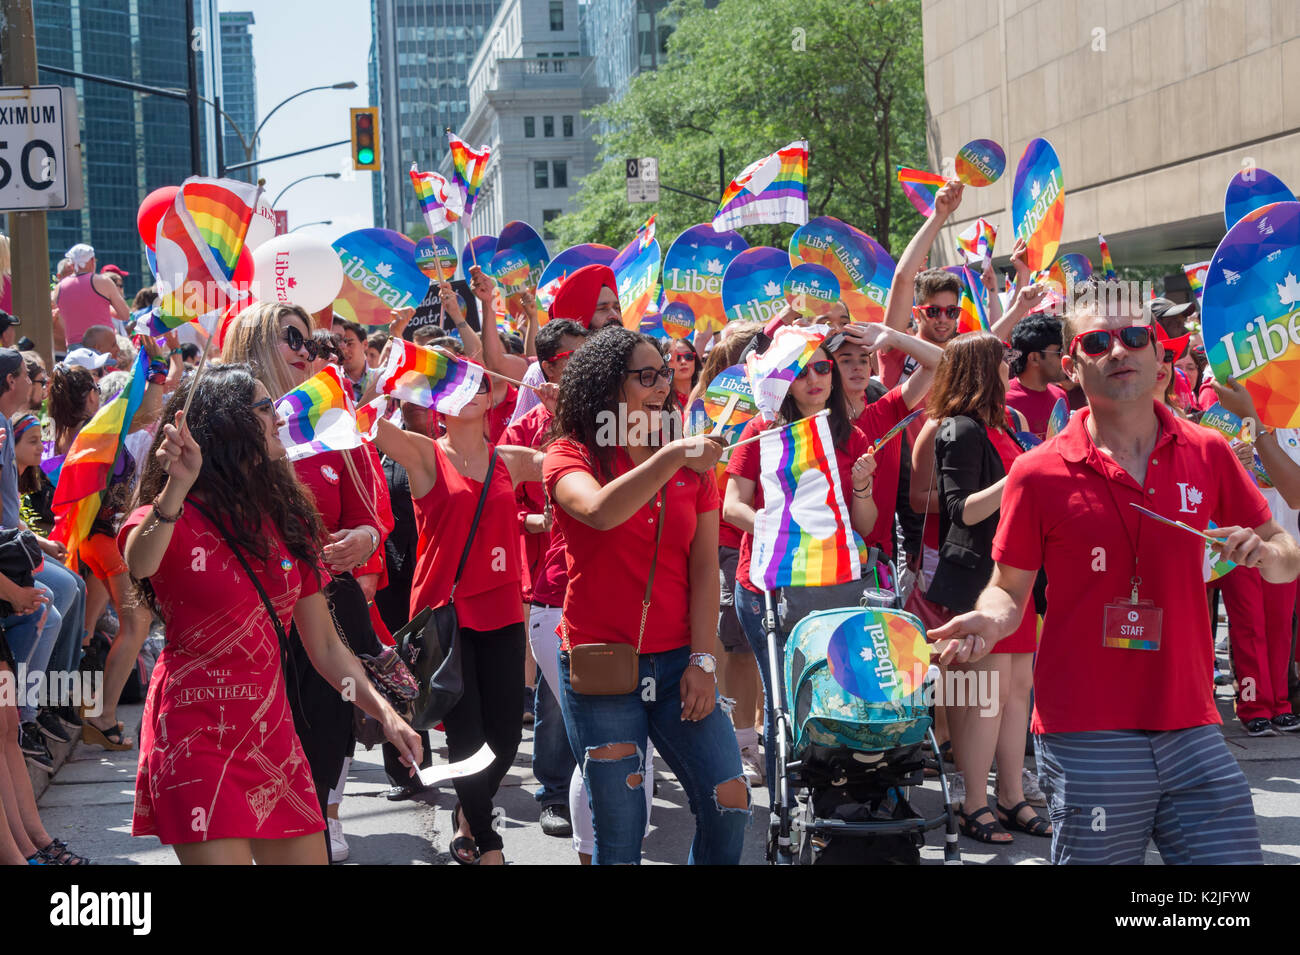 Montréal, Canada - 20 août 2017 : Les membres du Parti libéral du Canada prennent part à la parade de la Fierté gaie de Montréal Banque D'Images